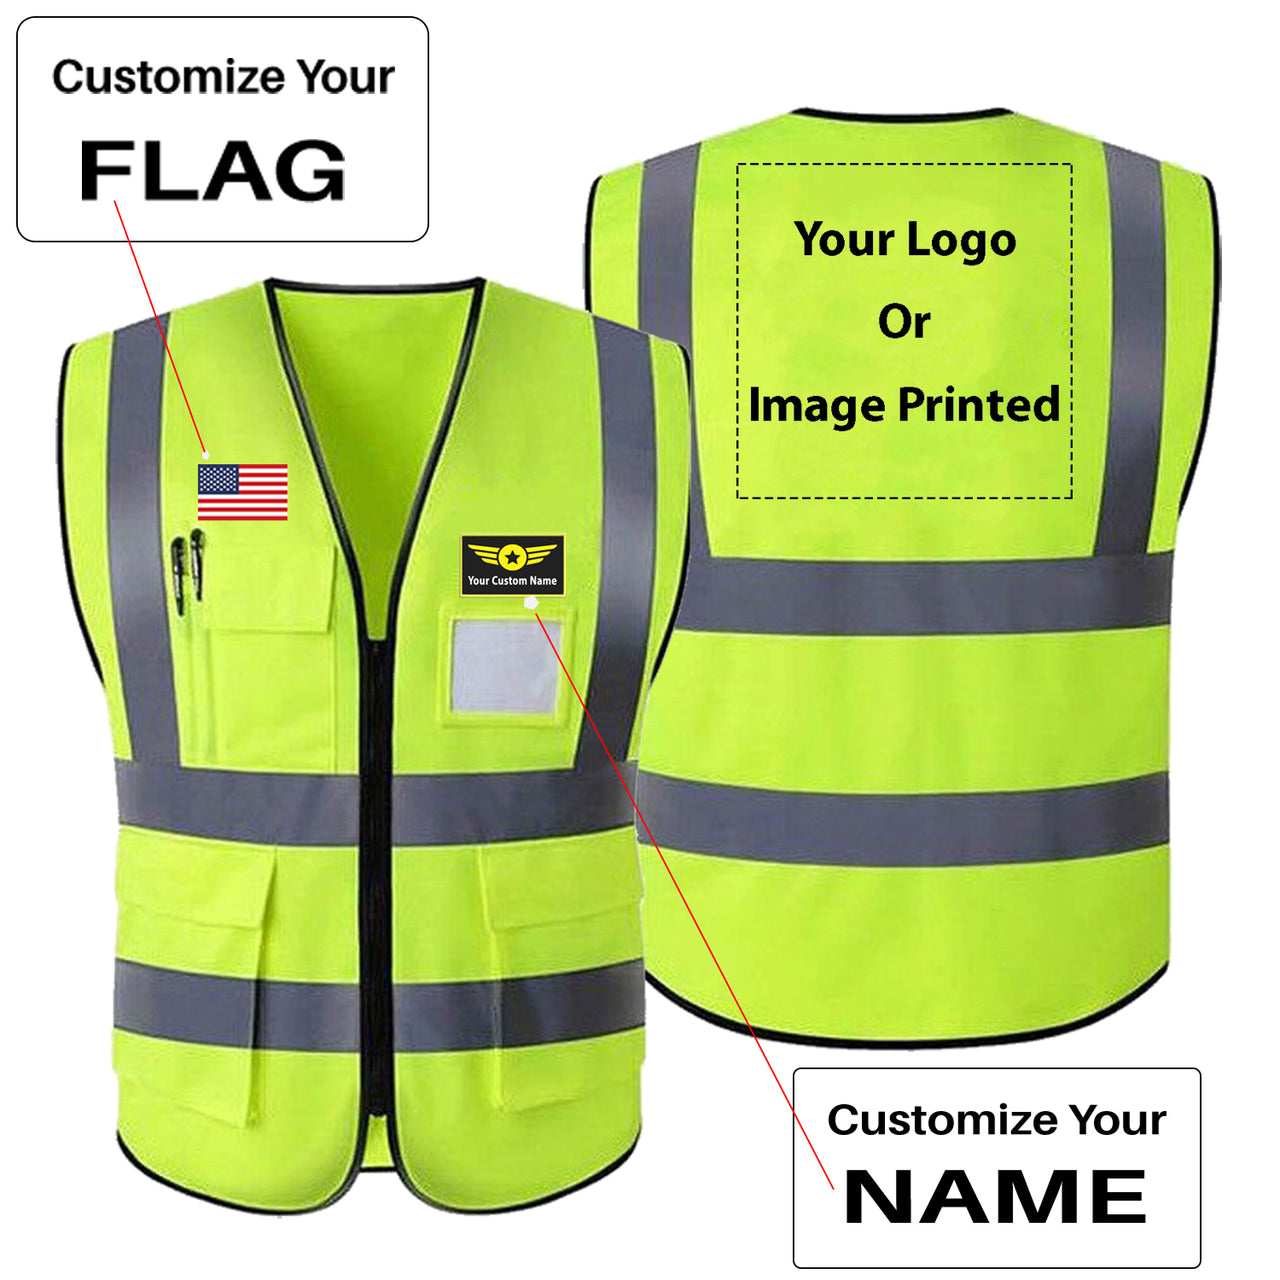 Custom Your Name & Flag & Logo (1) Designed Reflective Vests